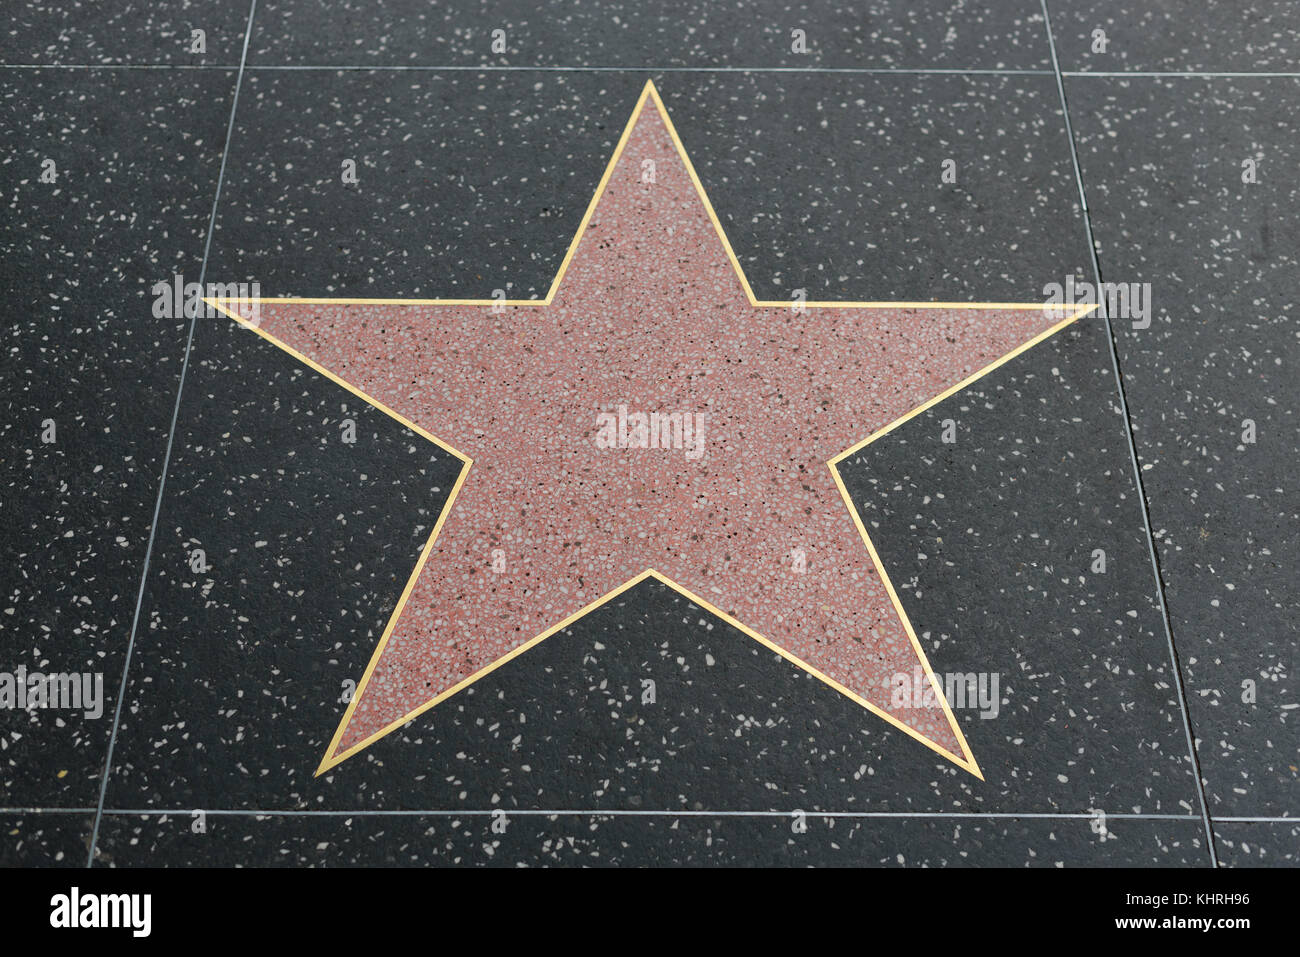 HOLLYWOOD, CA - 06 dicembre: vuota una stella sulla Hollywood Walk of Fame in Hollywood, la California il 6 dicembre 2016. Foto Stock